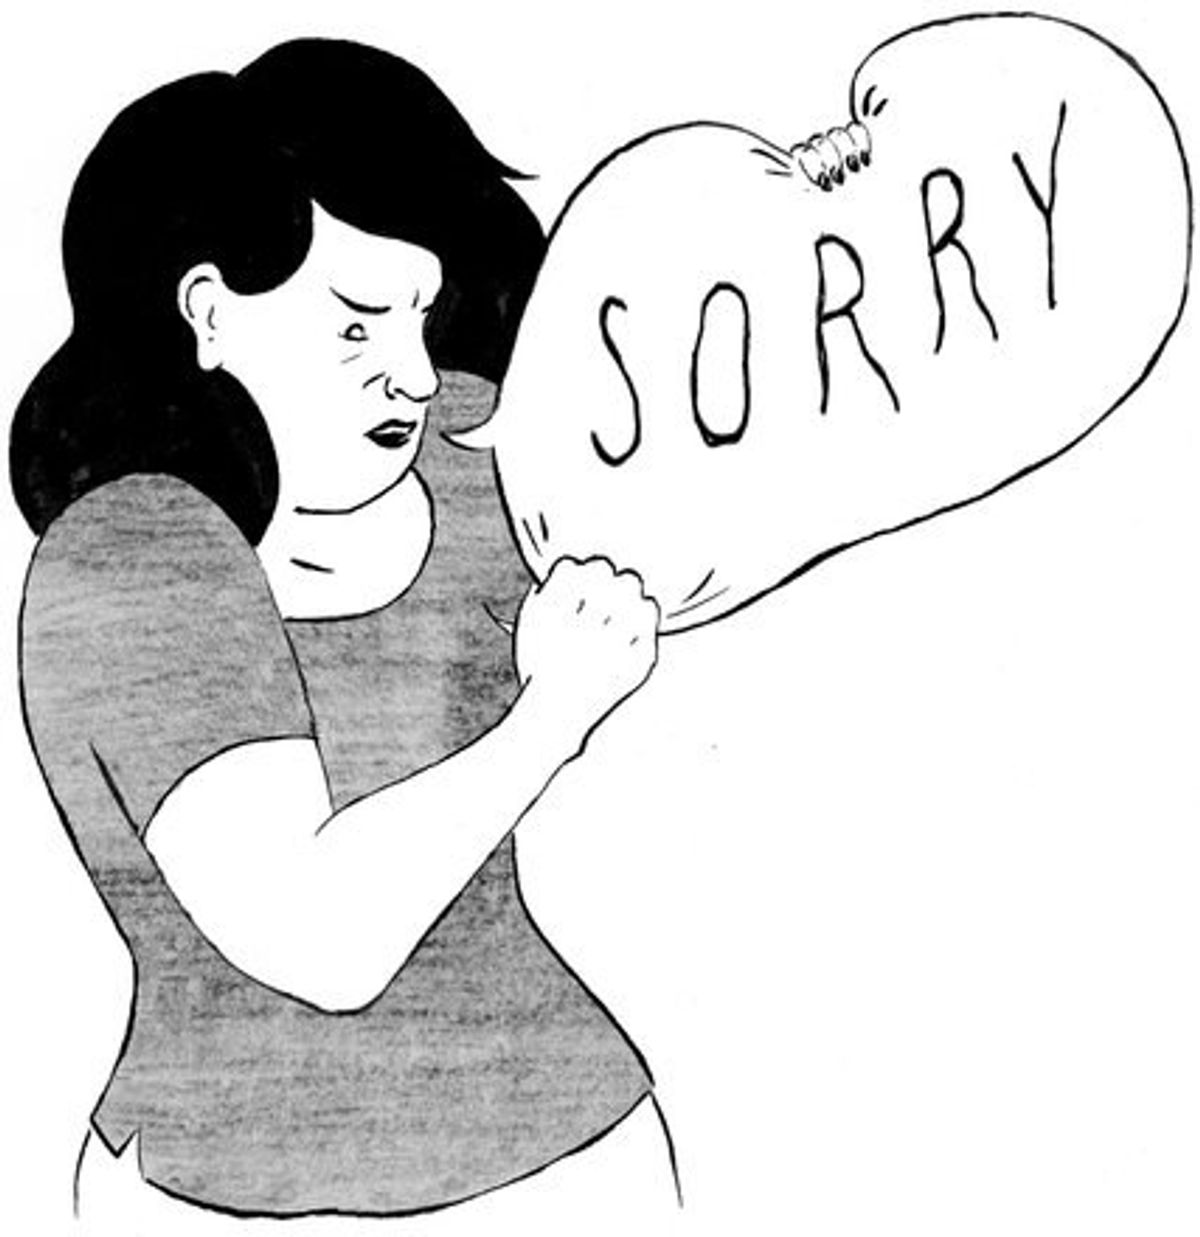 Dear Women, Stop Apologizing